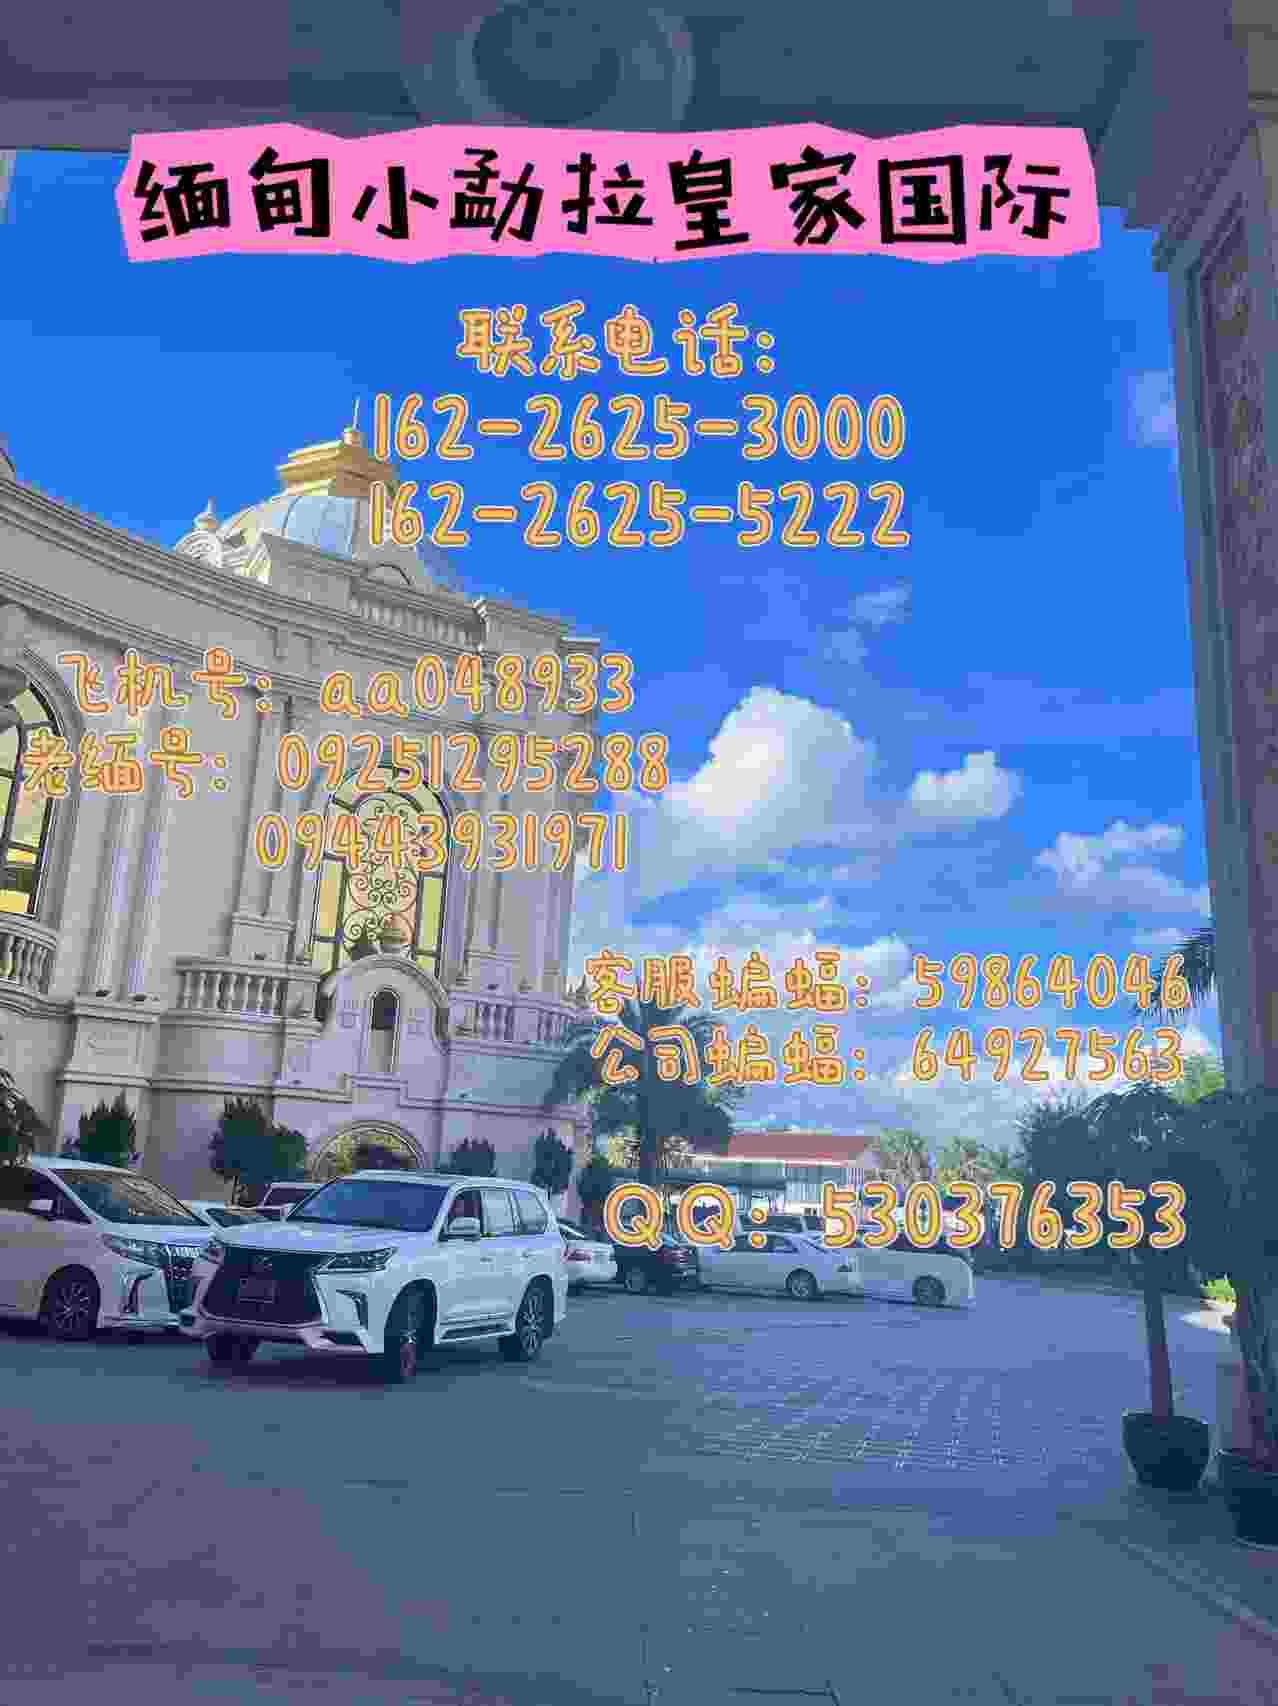 缅 甸小勐拉曼秀皇家厅联系电话16226253000